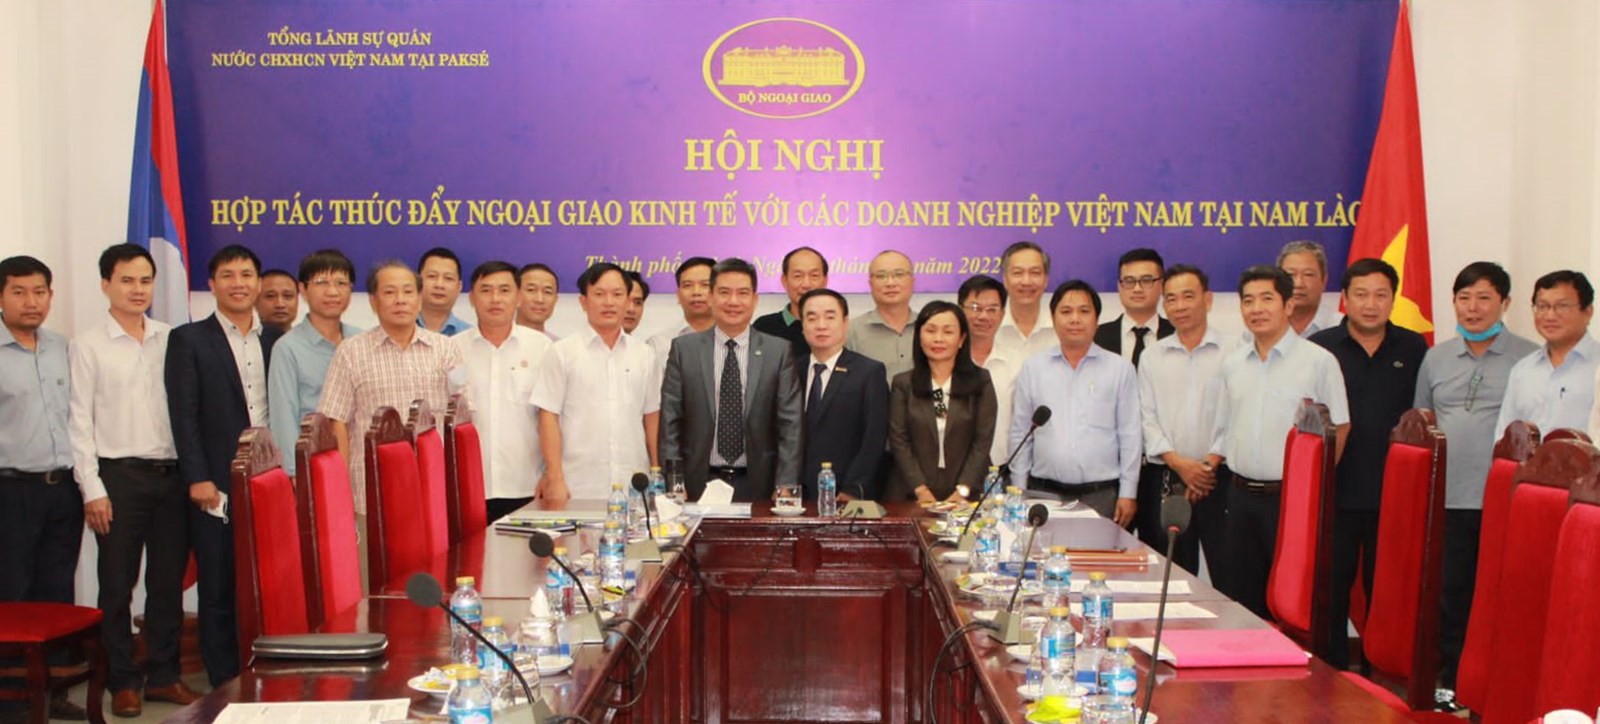 Thúc đẩy ngoại giao kinh tế với doanh nghiệp Việt Nam tại Nam Lào -0